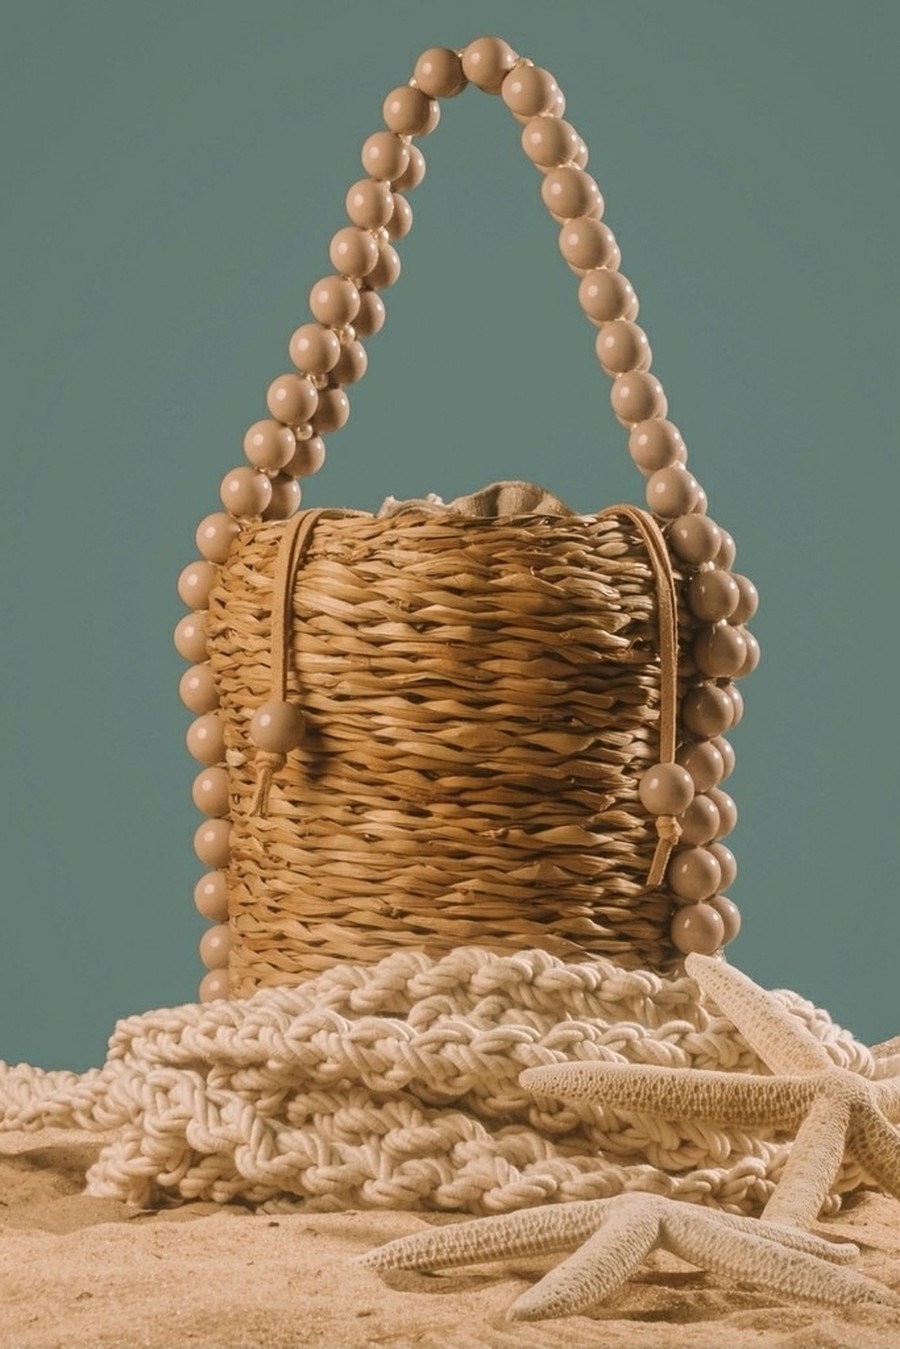 bolsa de palha pietra bege 1515 lis fiaschi